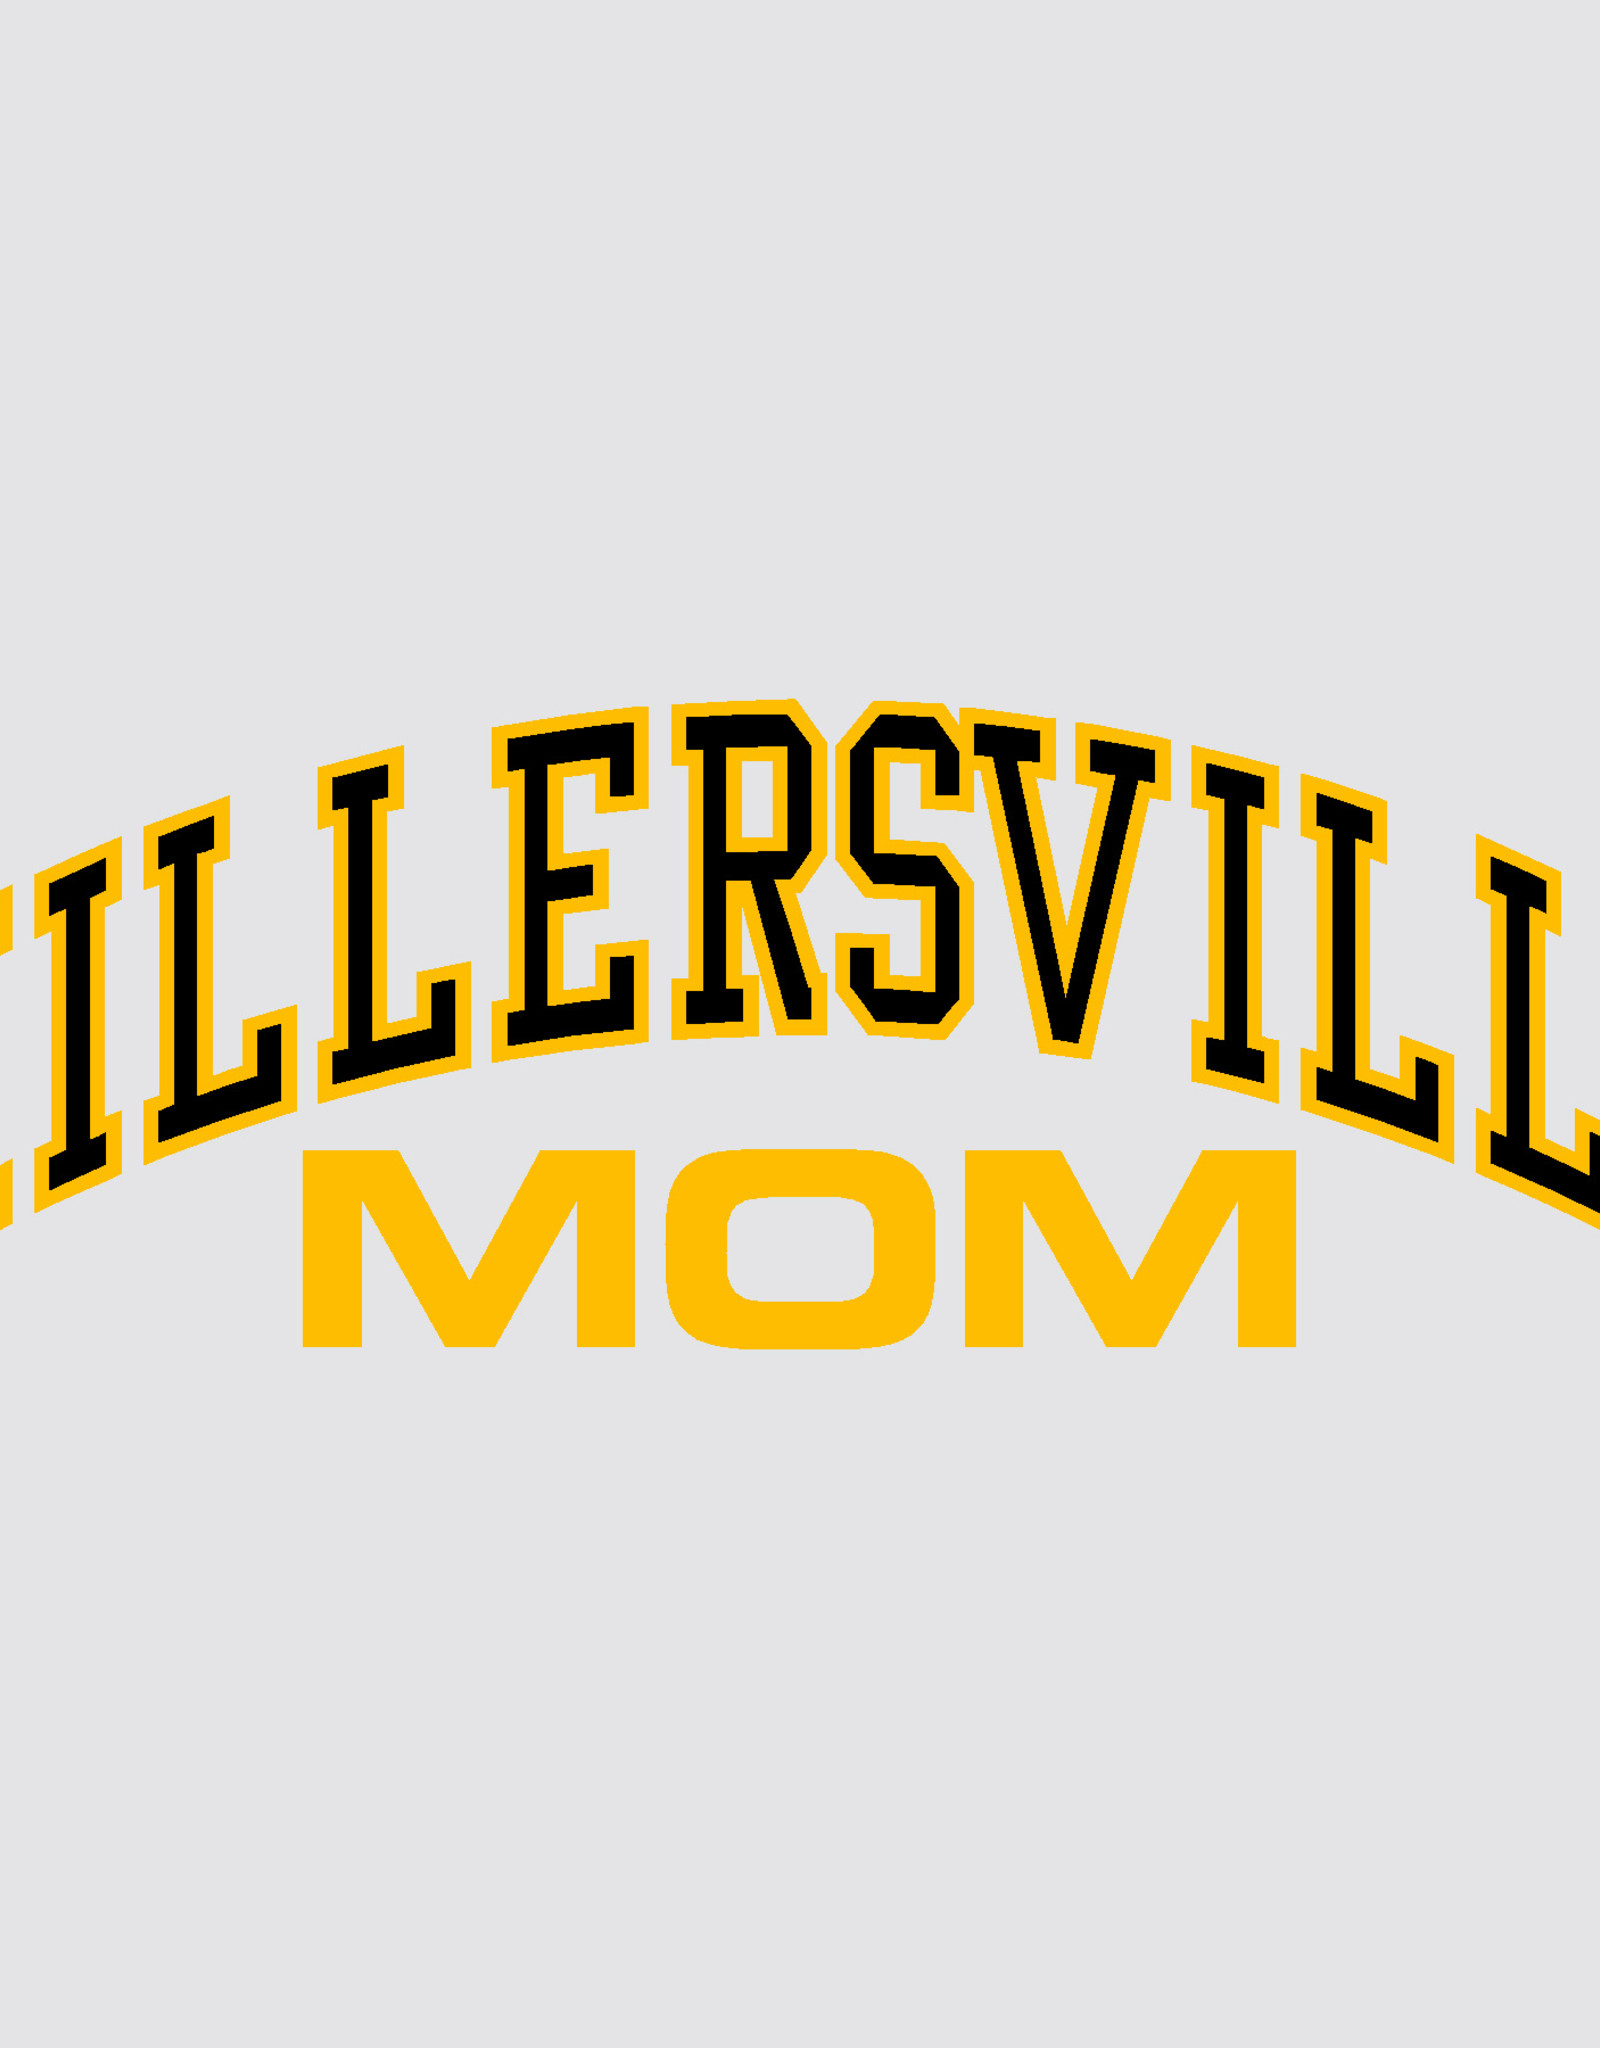 Millersville Mom Decal